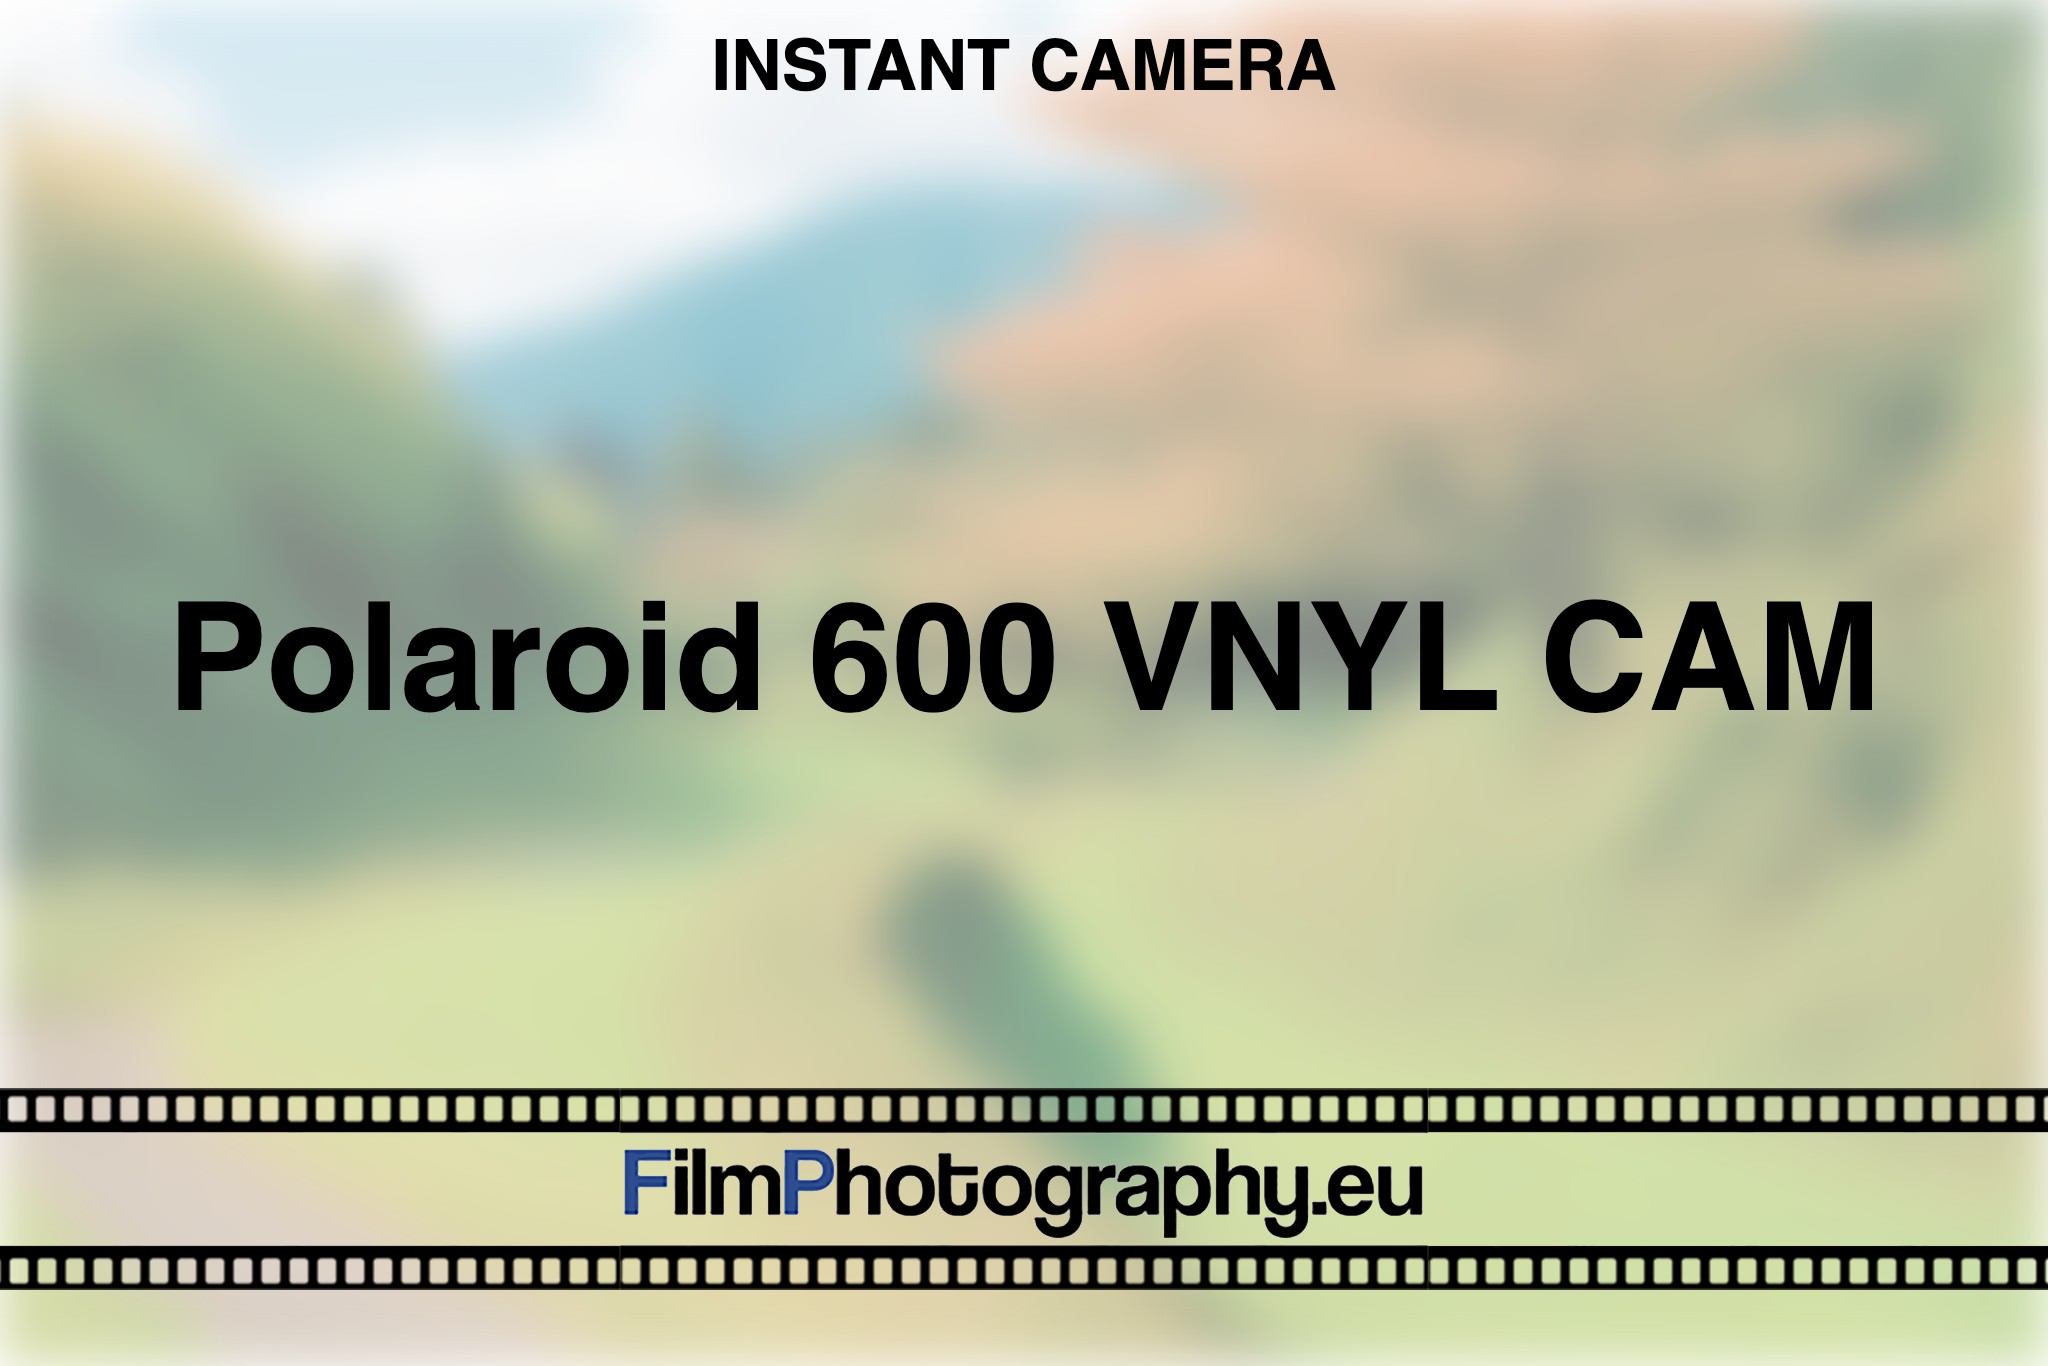 polaroid-600-vnyl-cam-instant-camera-bnv